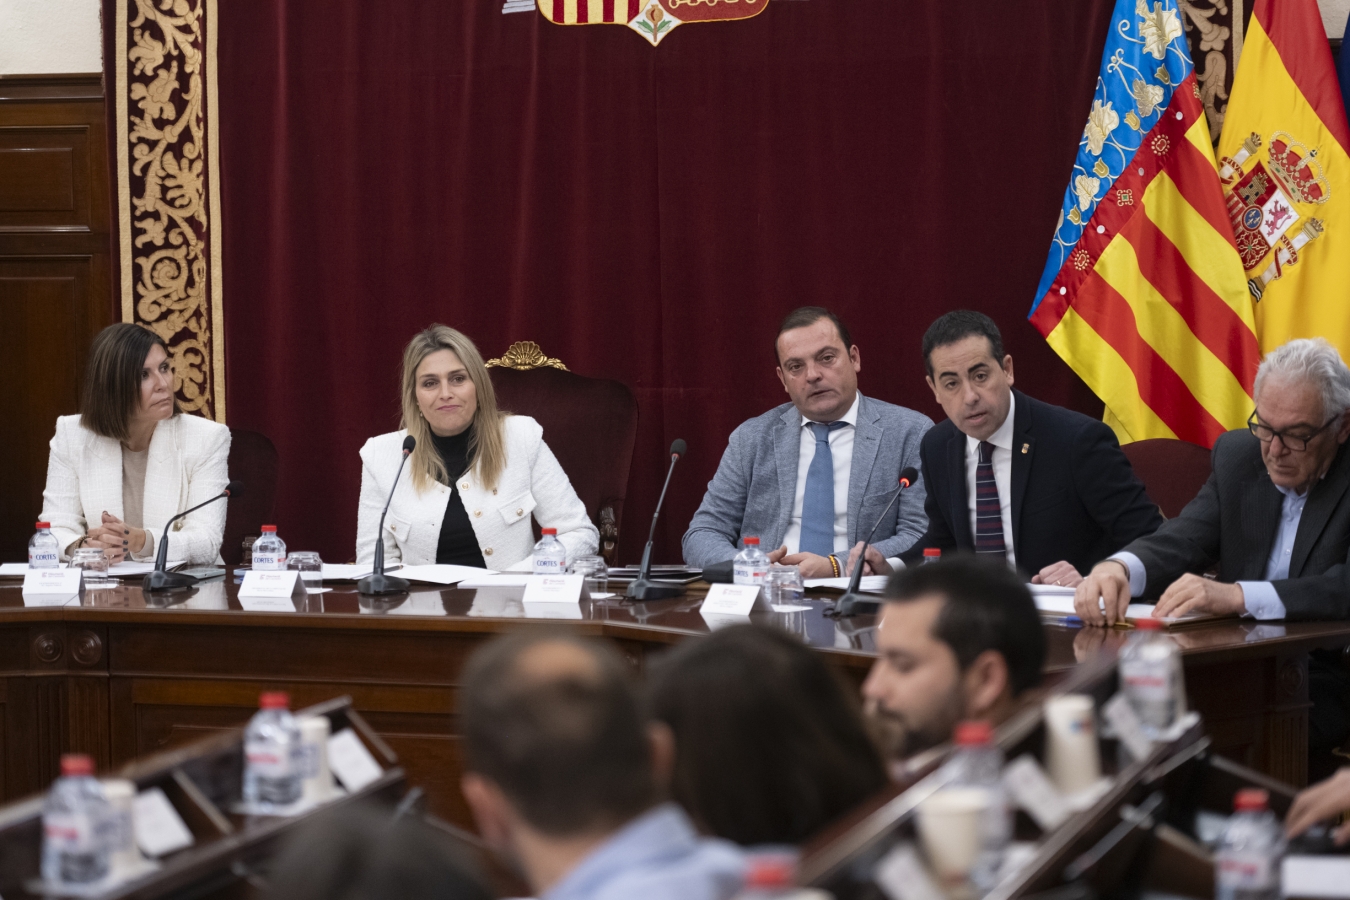 La Diputació de Castelló activa el Pla Impulsa, dissenyat per a donar la major i millor resposta a les necessitats dels municipis de la província